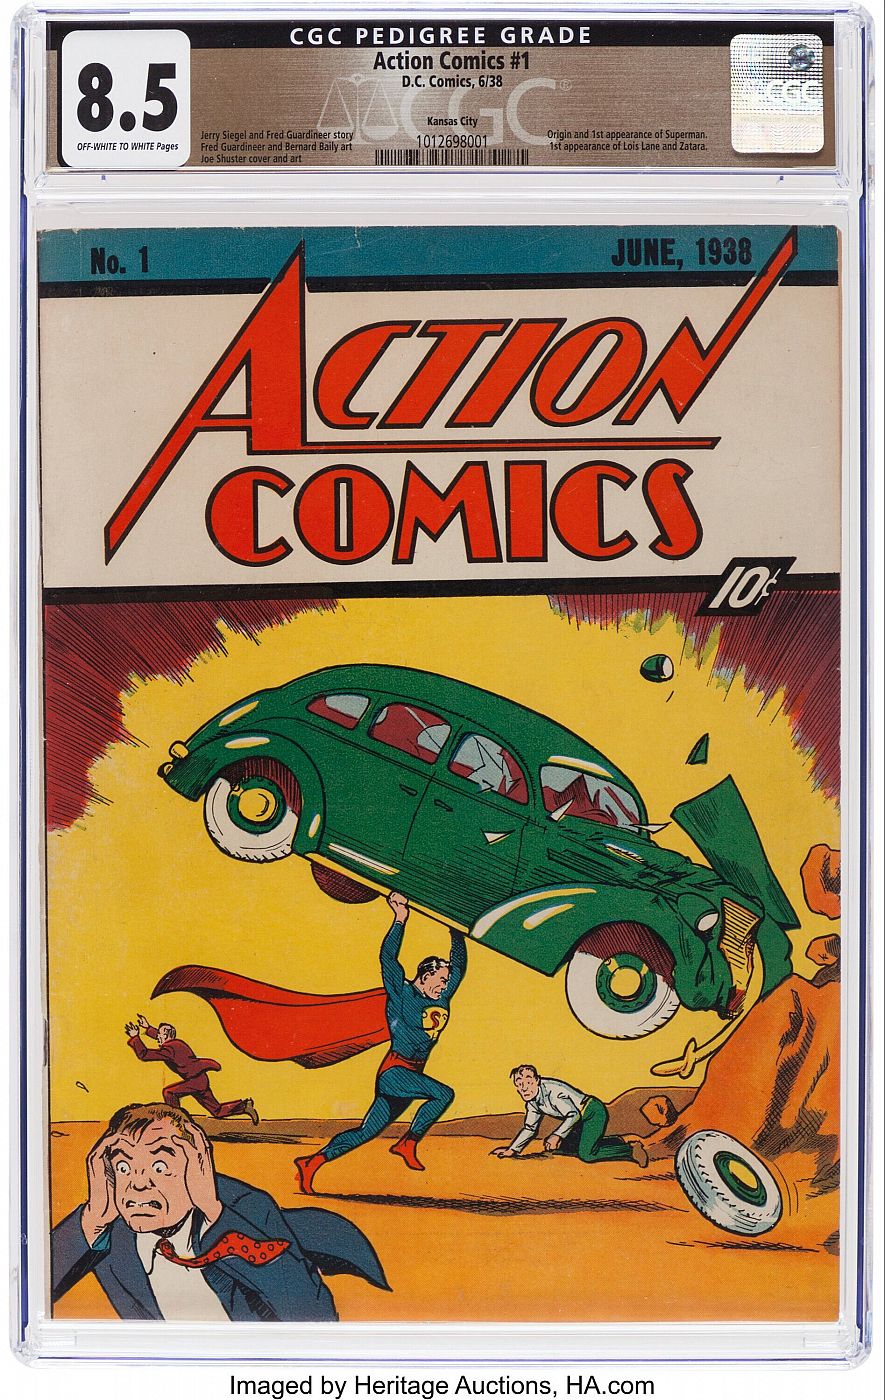 Portada de 'Action Comics #1' (1938)